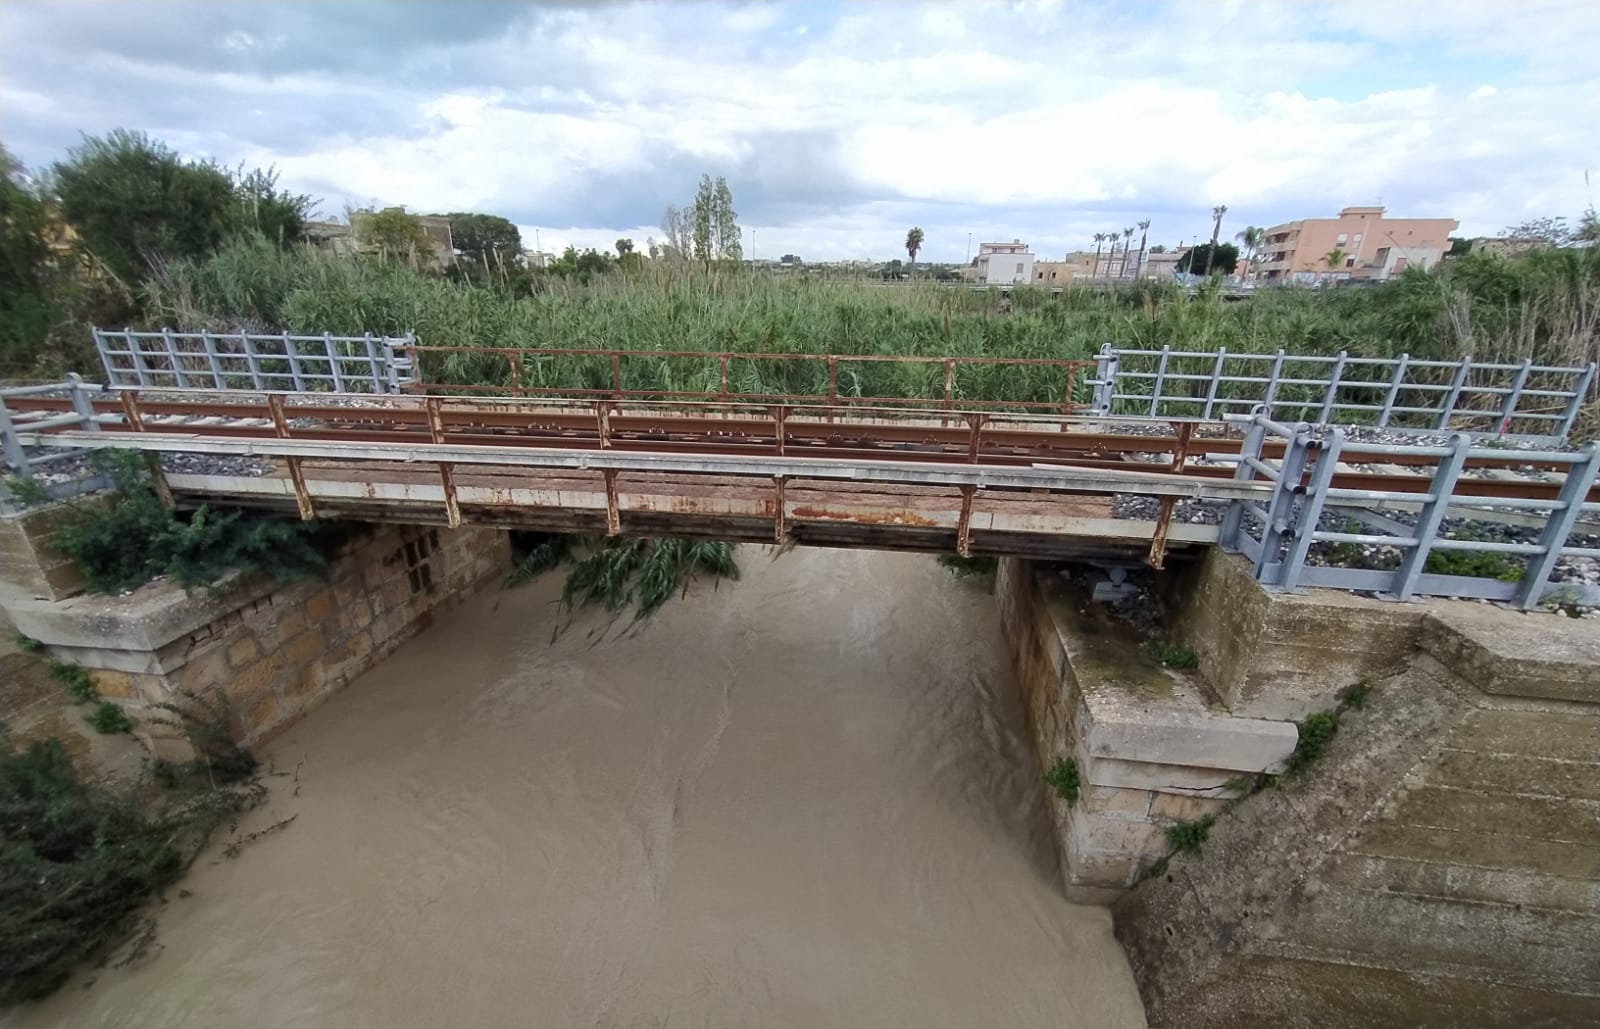 Maltempo e rischio idrogeologico, Marino (Legambiente): “Occorre rivedere la politica di gestione del territorio”